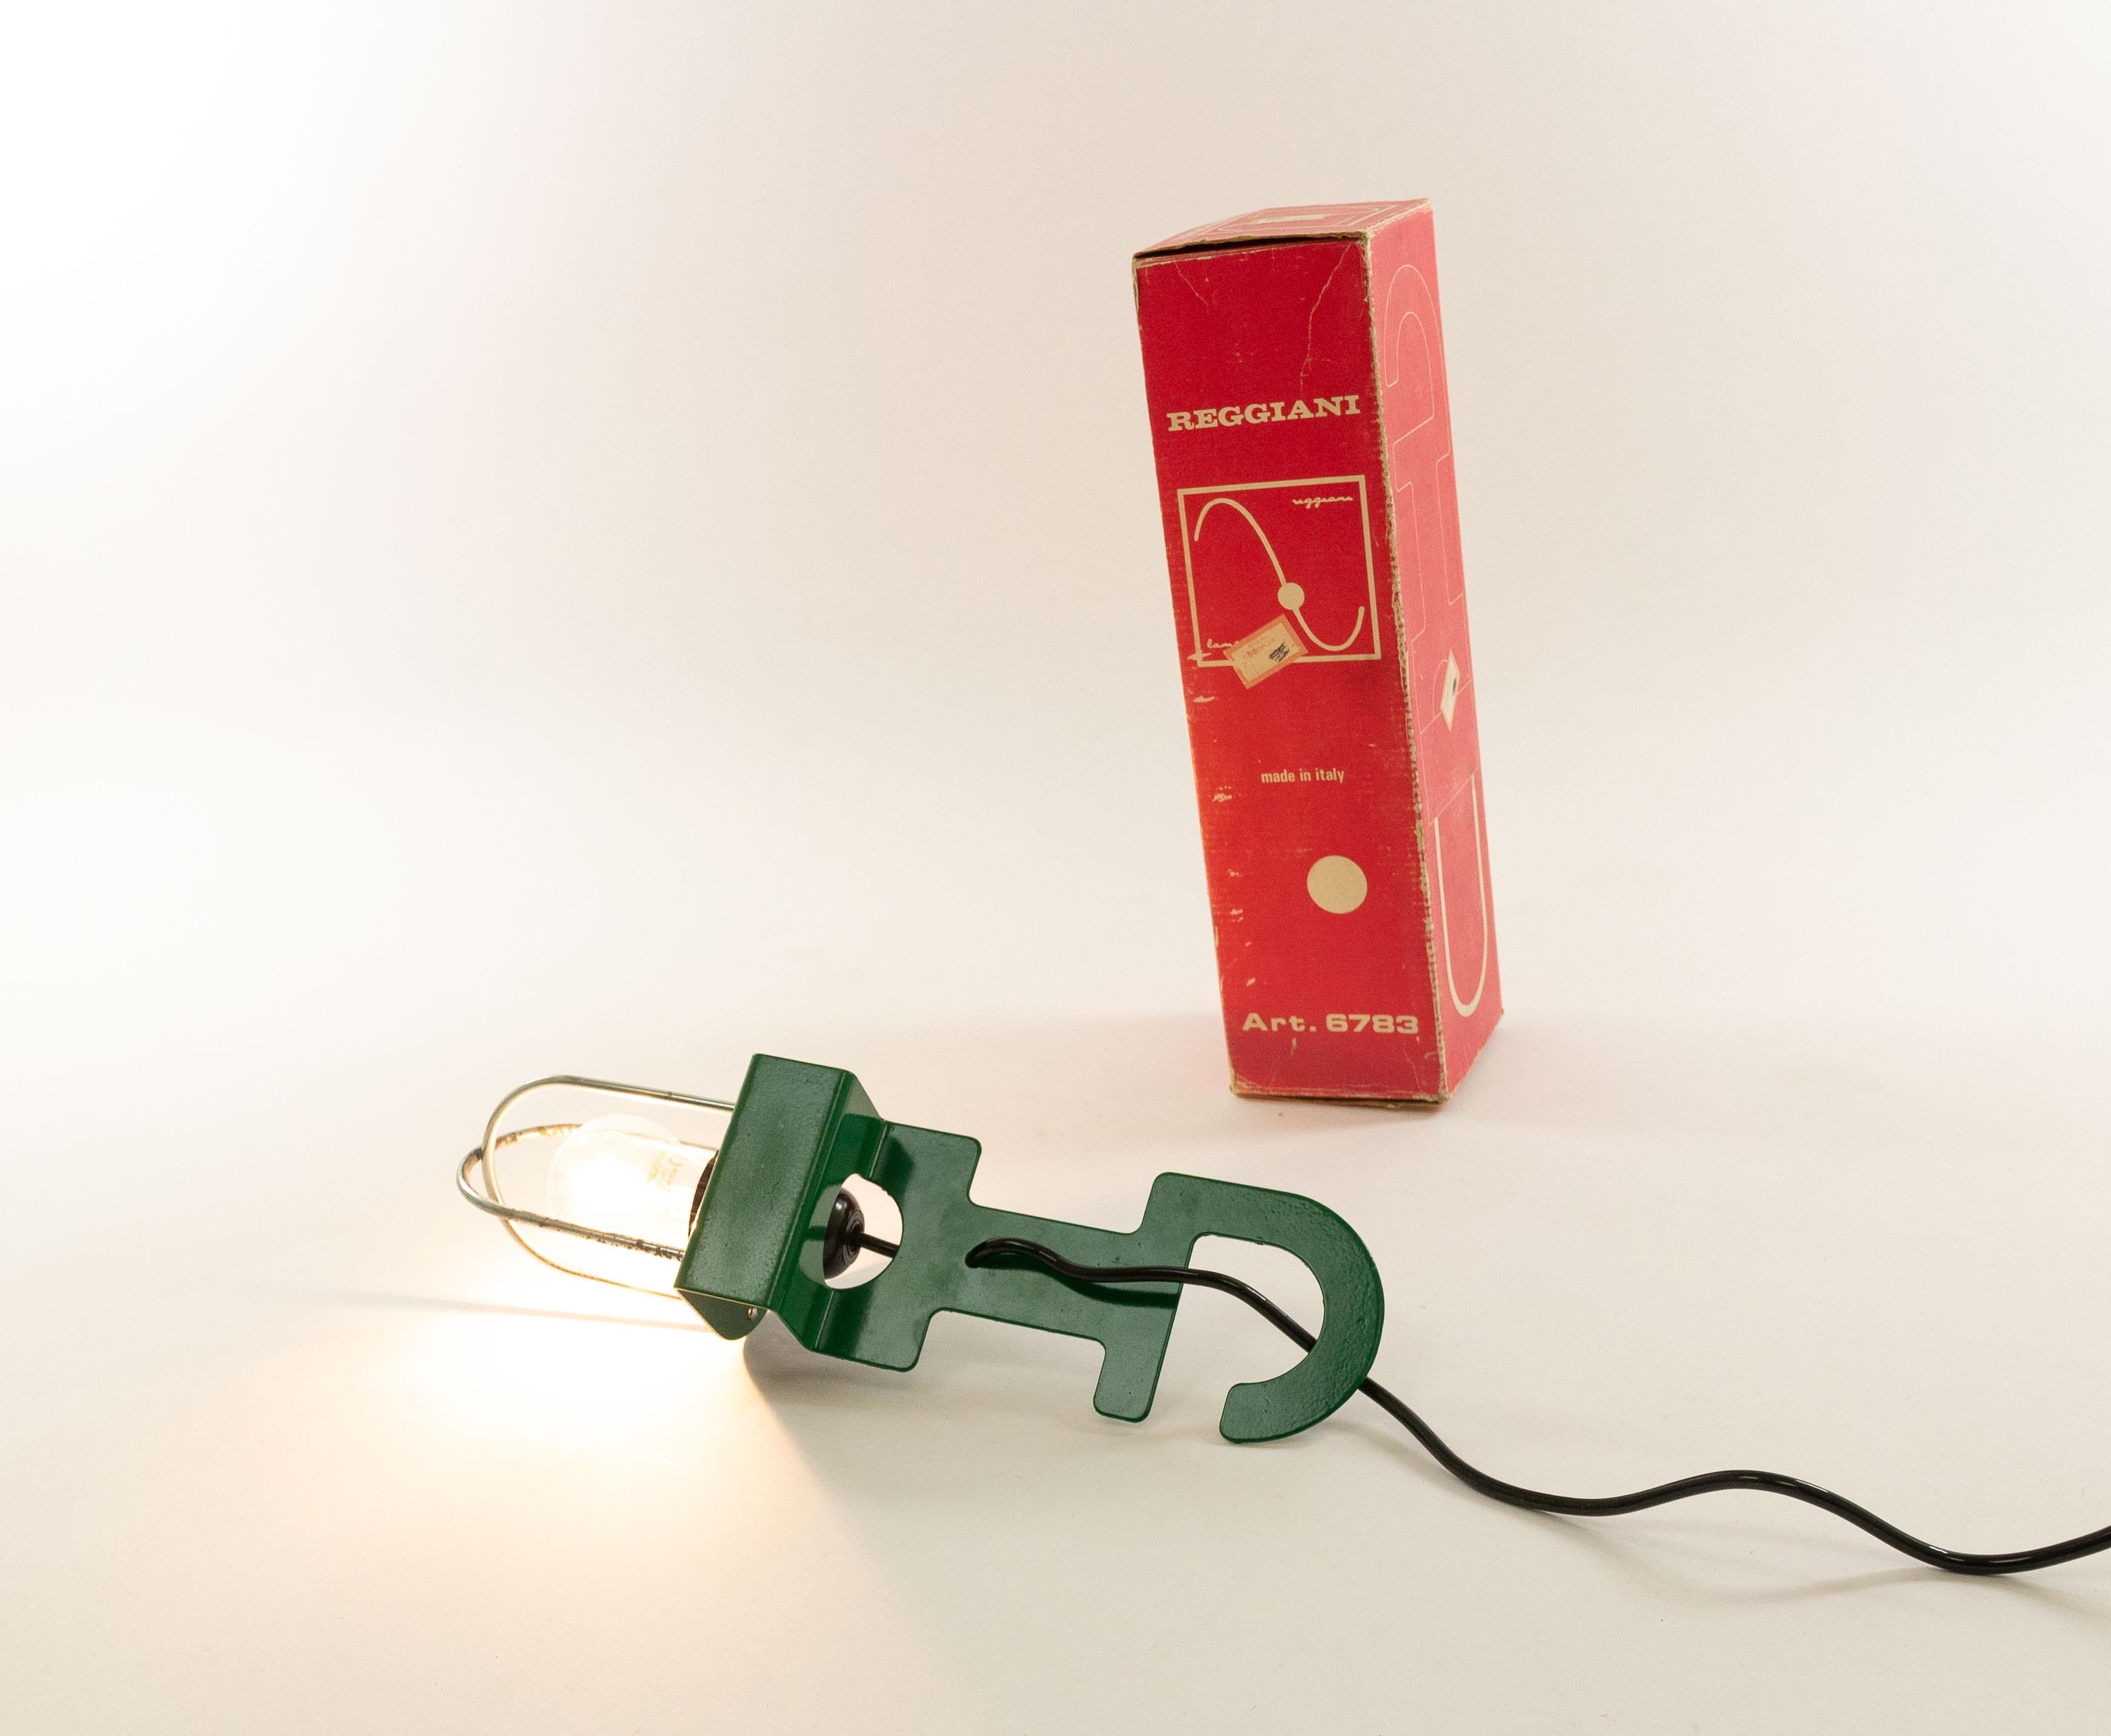 Extraordinaire lampe de Reggiani, conçue et produite dans les années 1970. La lampe peut être utilisée comme lampe de table, comme suspension (elle peut être accrochée à l'aide du fil électrique ou, naturellement, du crochet de la lampe) et ... tant